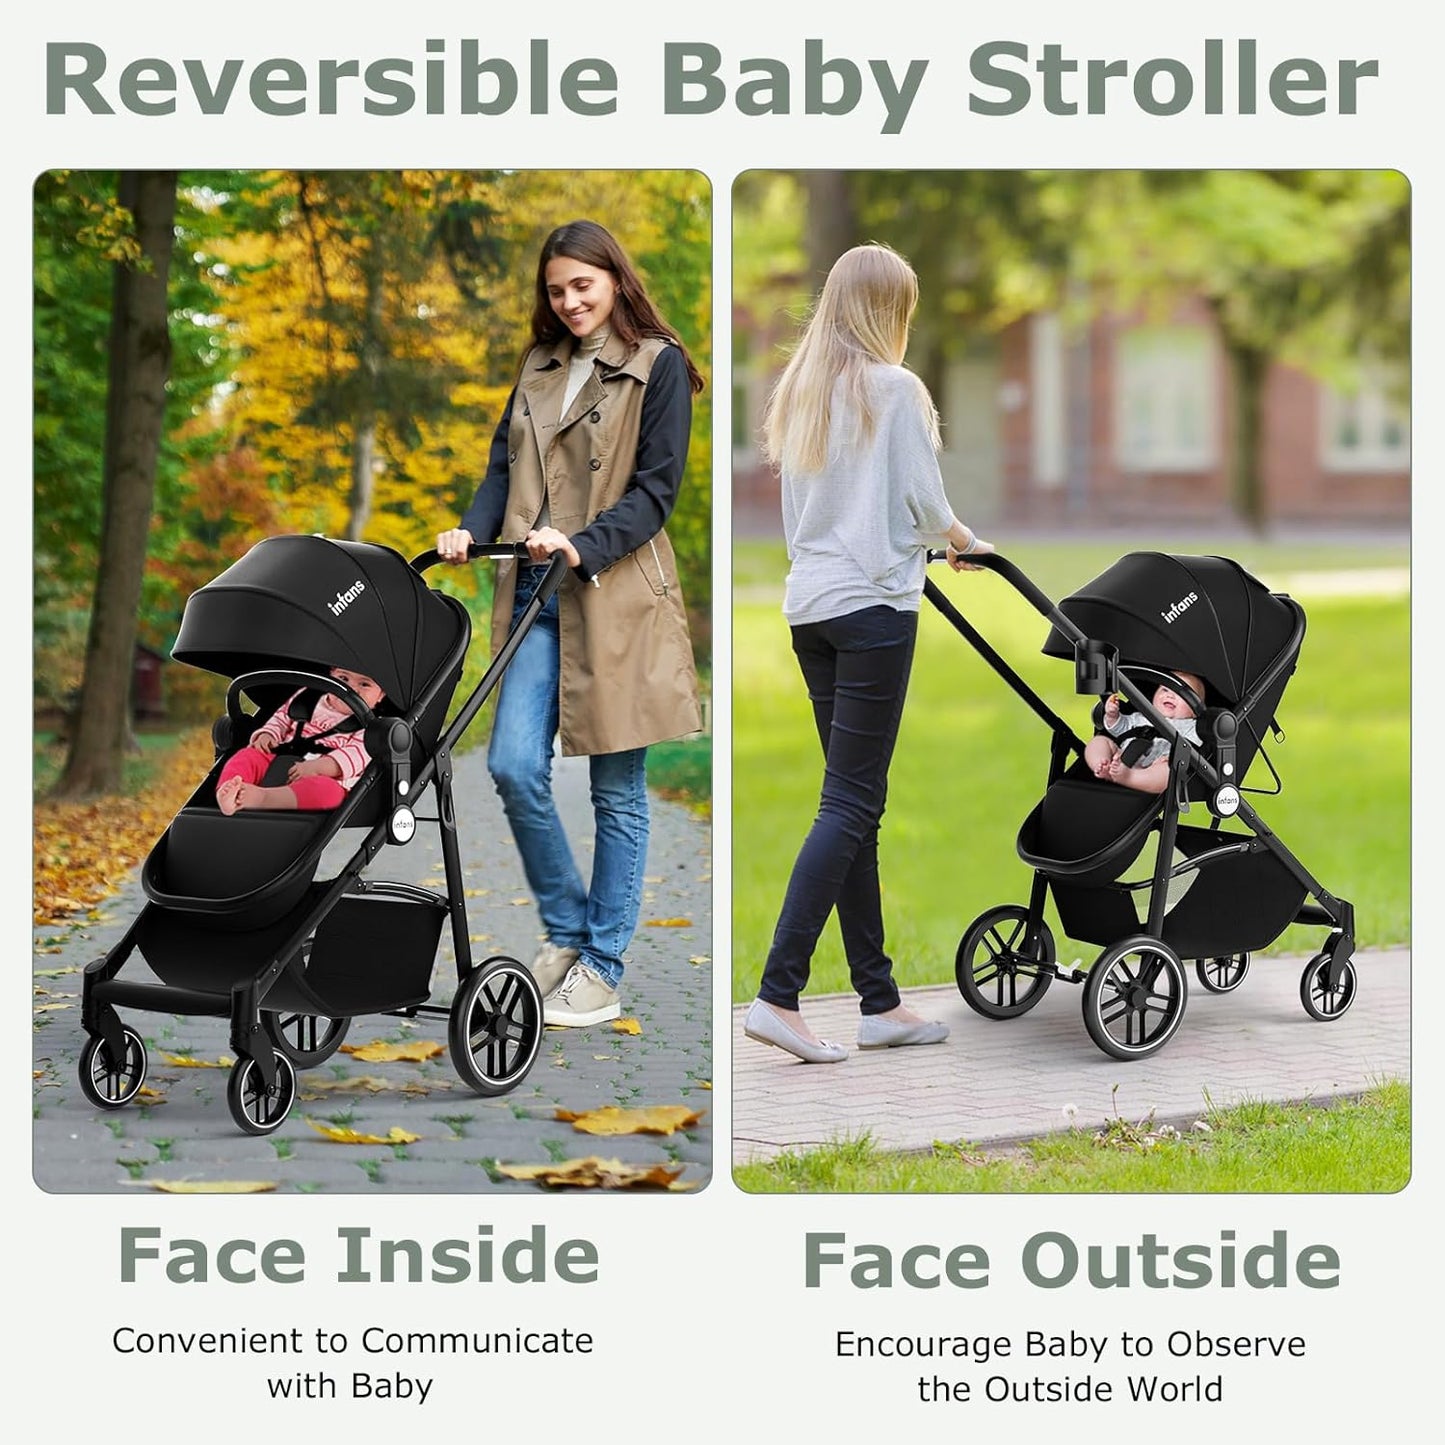 2 in 1 Baby Stroller, High Landscape Infant Stroller & Reversible Bassinet Pram, Foldable Pushchair with Adjustable Canopy, Storage Basket, Cup Holder, Suspension Wheels (Black)